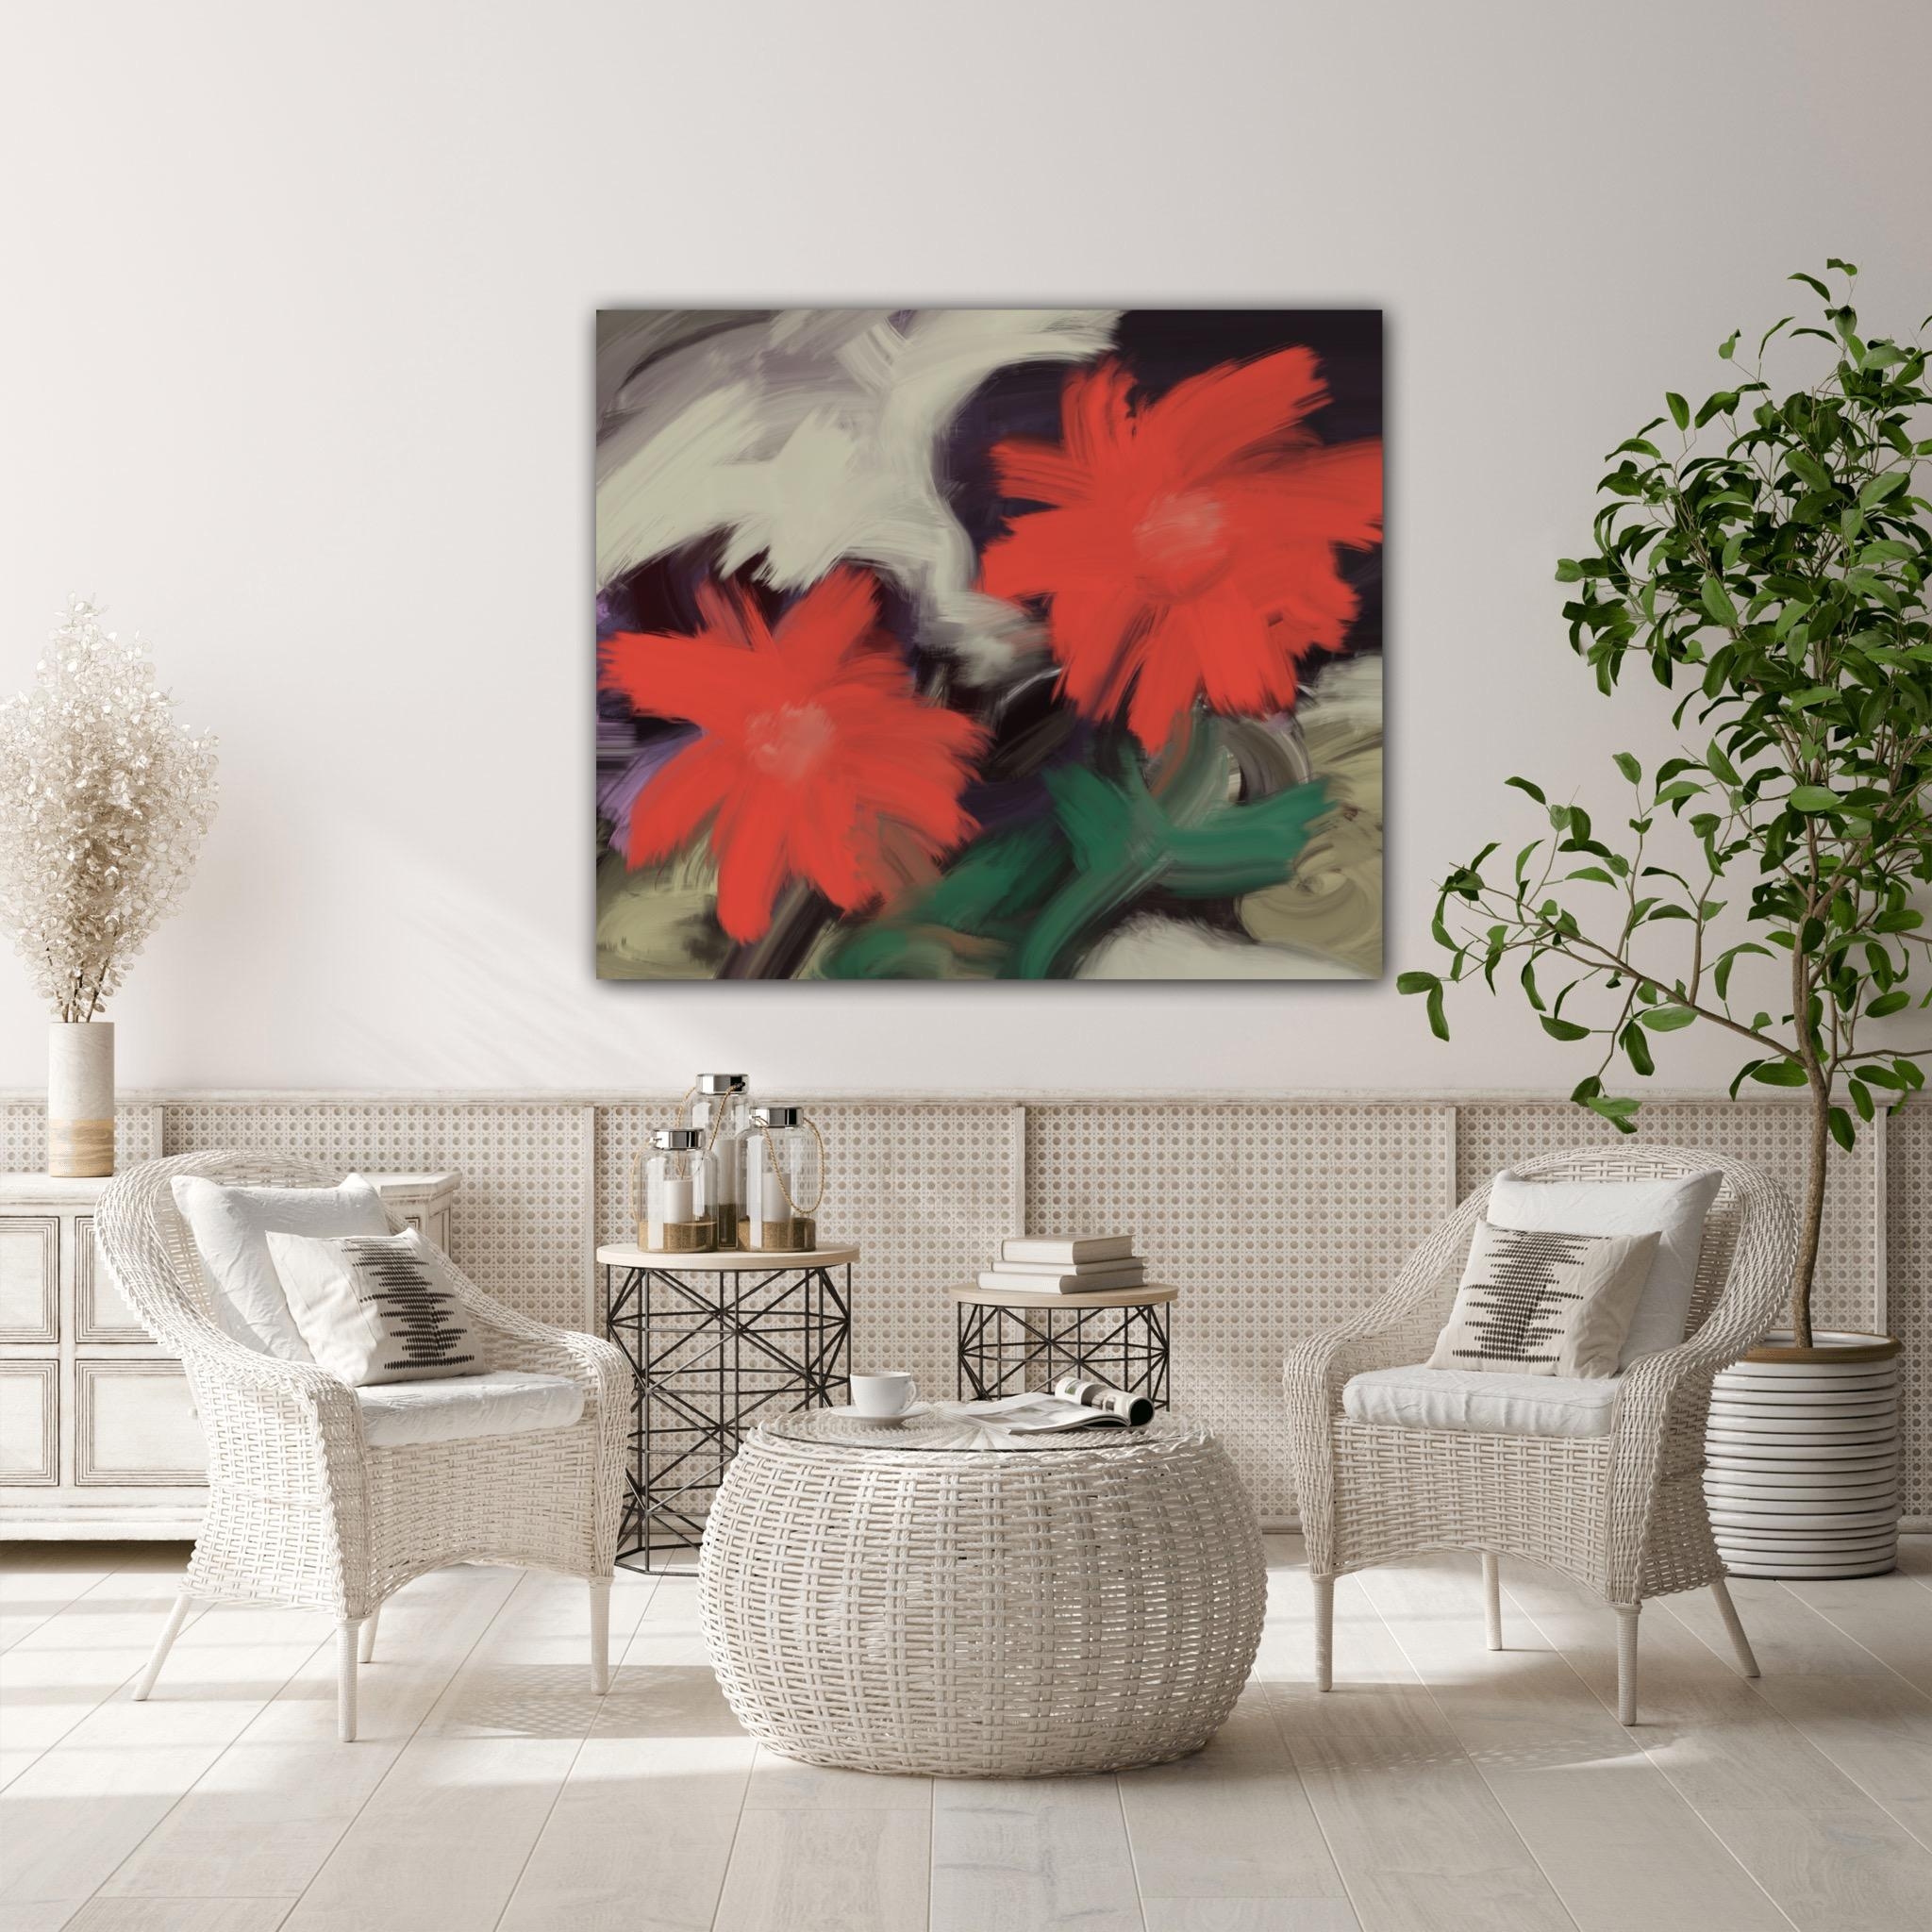 Frühlingsliebe ♥️ 

#Kunstdruck #couchliebe #interior #wohnzimmer #couchstyle #deko #blumen